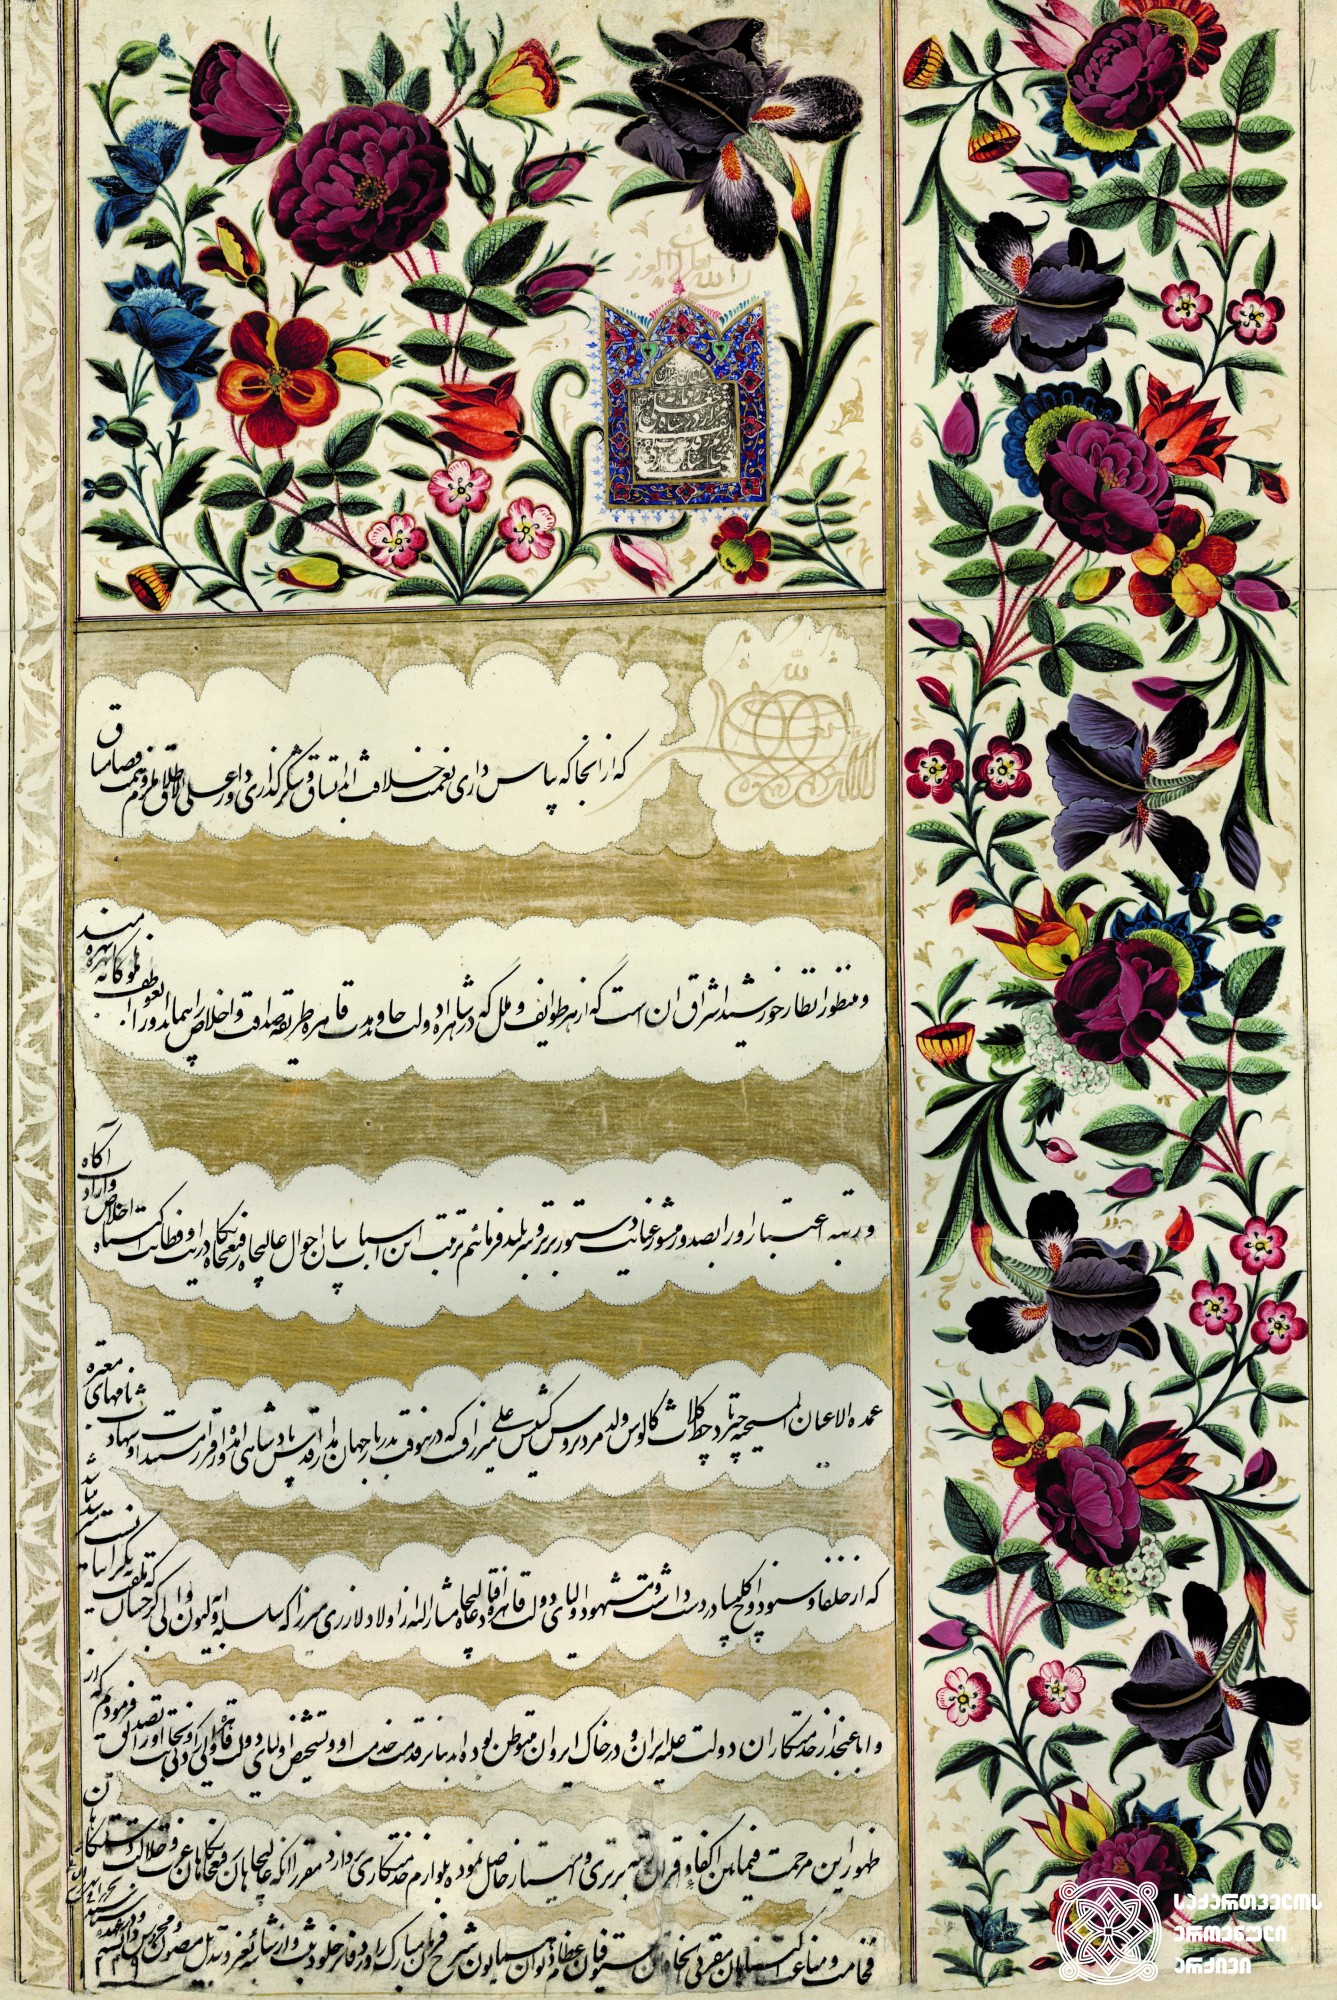 ნადირ-შაჰის ფირმანი. 1738 წელი. <br>
ნადირ-შაჰმა ფარსადანი  ქალაქ გორის მელიქად დანიშნა. <br>
დაცულია საქართველოს ეროვნულ არქივში. <br>

The decree of Nadir-Shah.1738. <br>
Nadir-Shah appointed Parsadan as a Melik of city Gori. 
Preserved at the National Archives of Georgia.